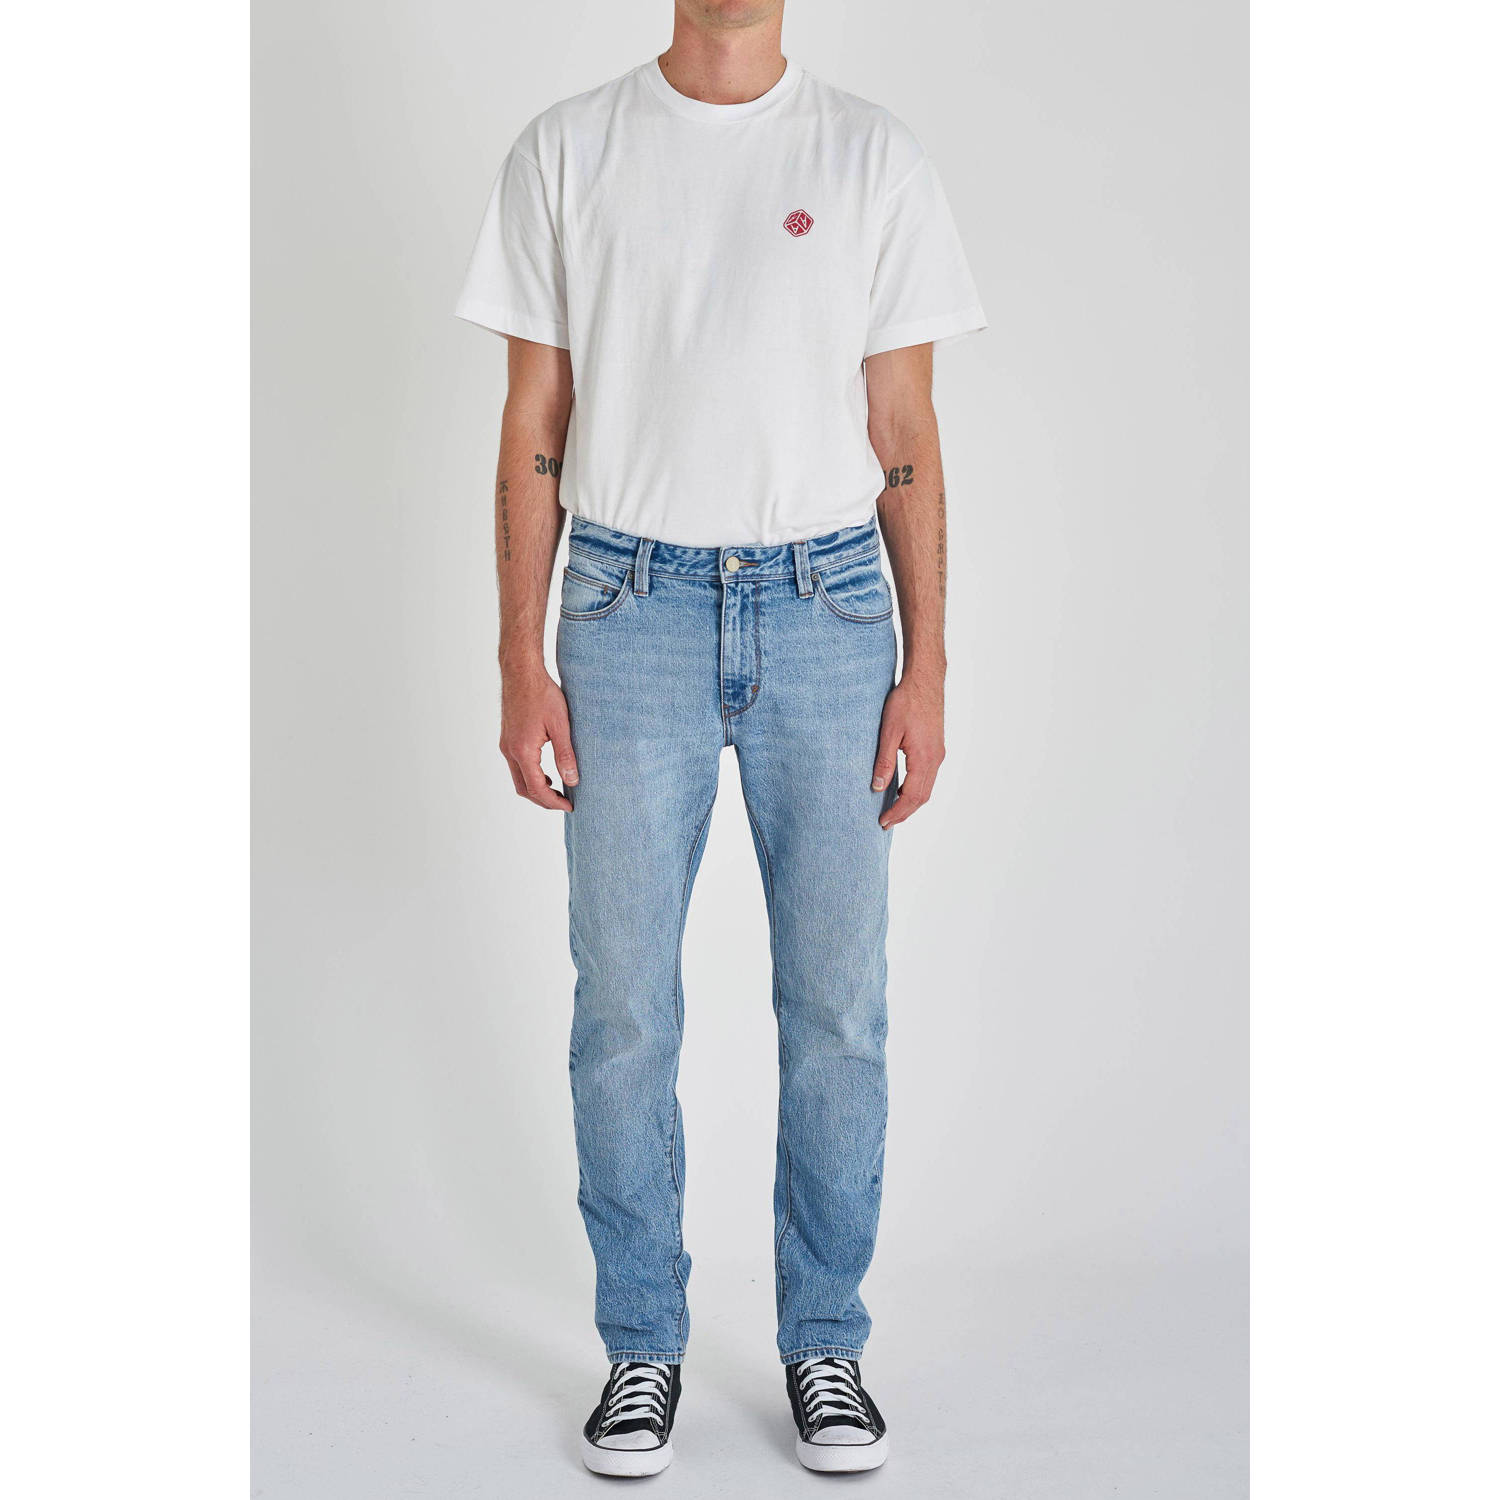 Abrand Jeans slim fit jeans DEXTER mid vintage blue